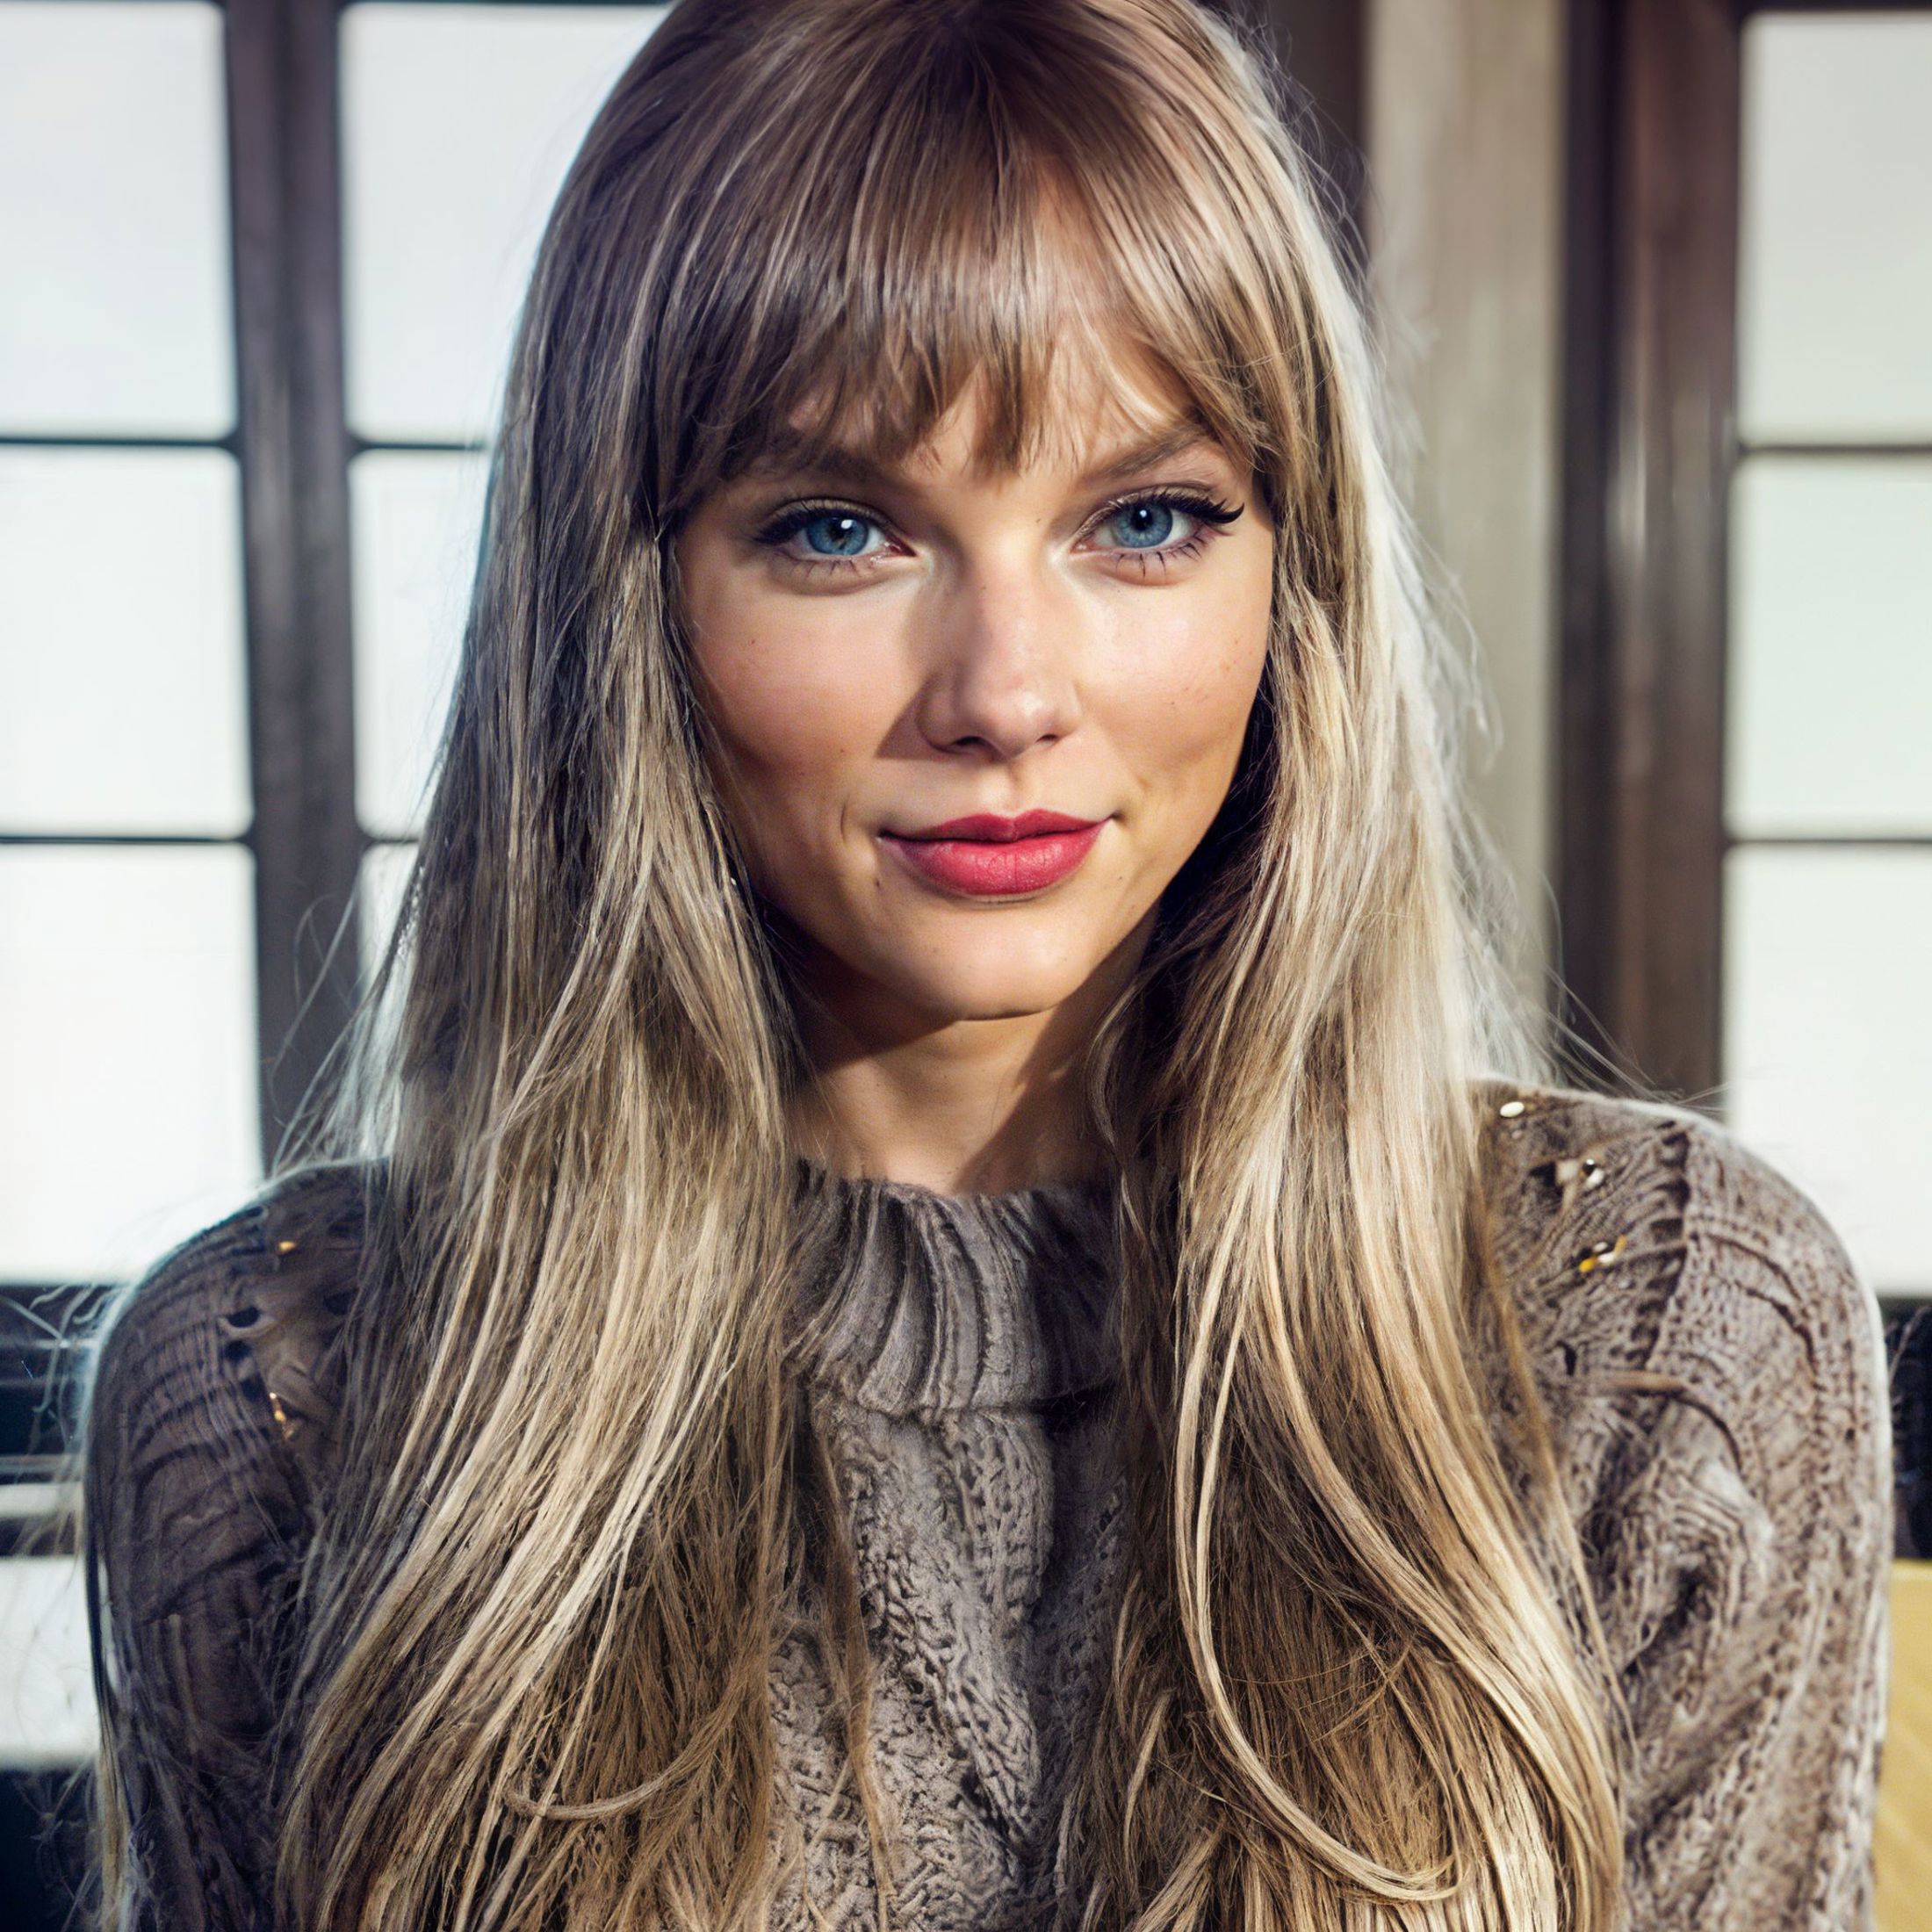 Taylor Swift image by Lukebones101